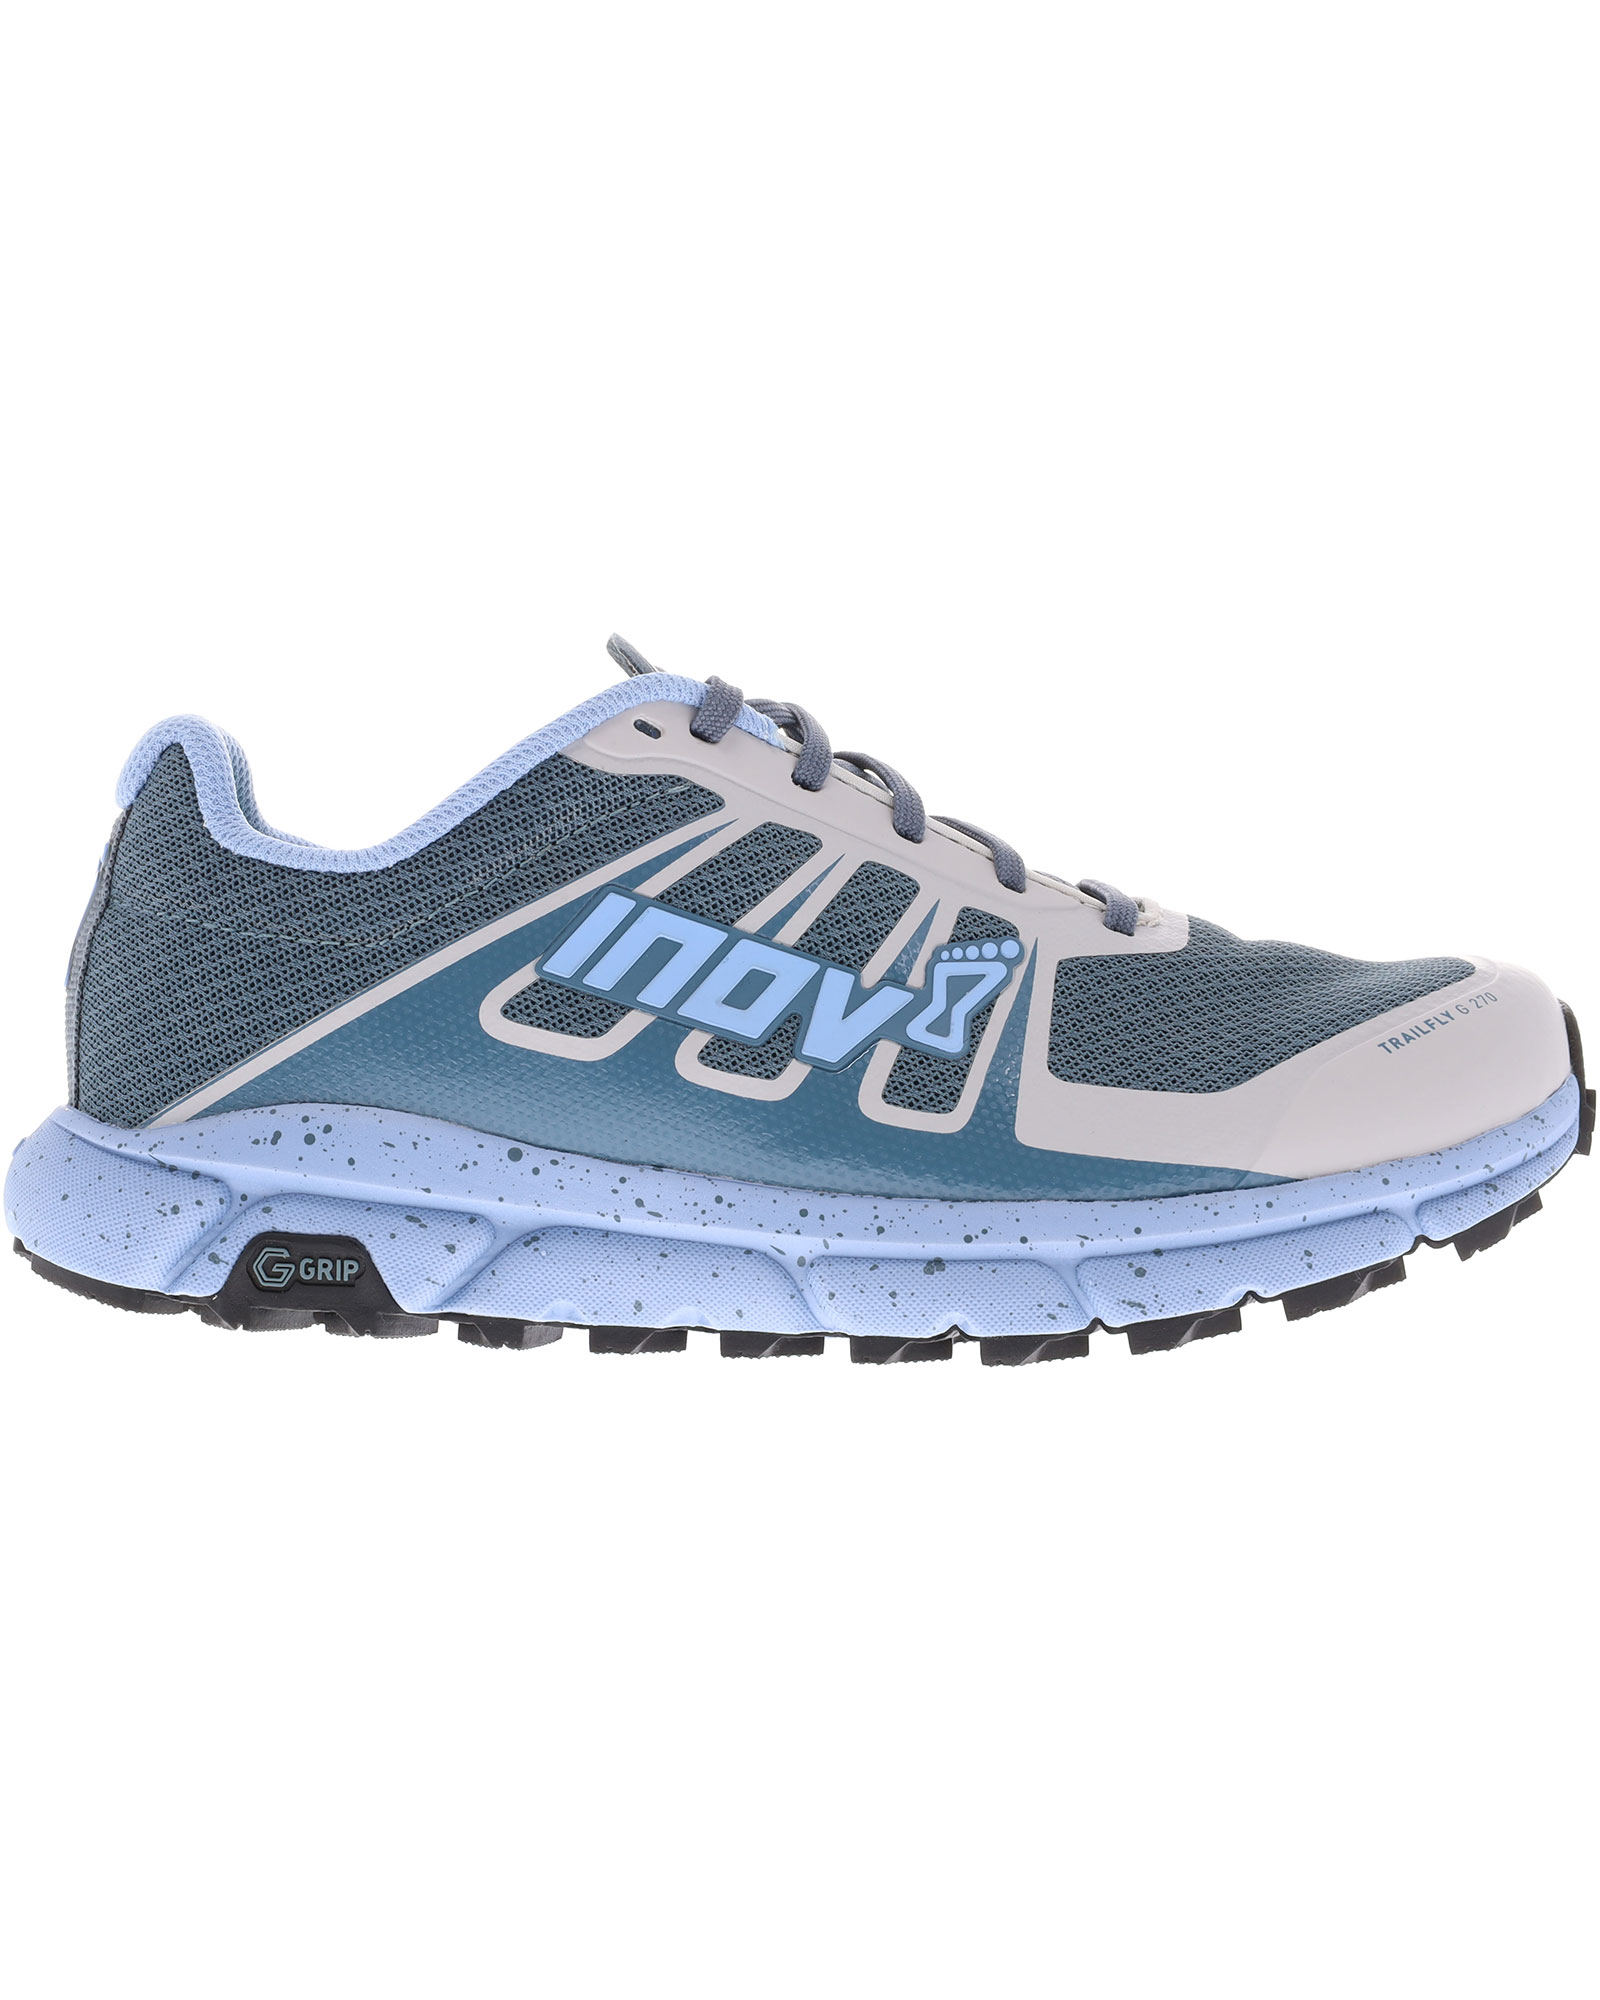 Inov 8 TrailFly G 270 V2 Women’s Trail Shoes - Blue/Grey UK 5